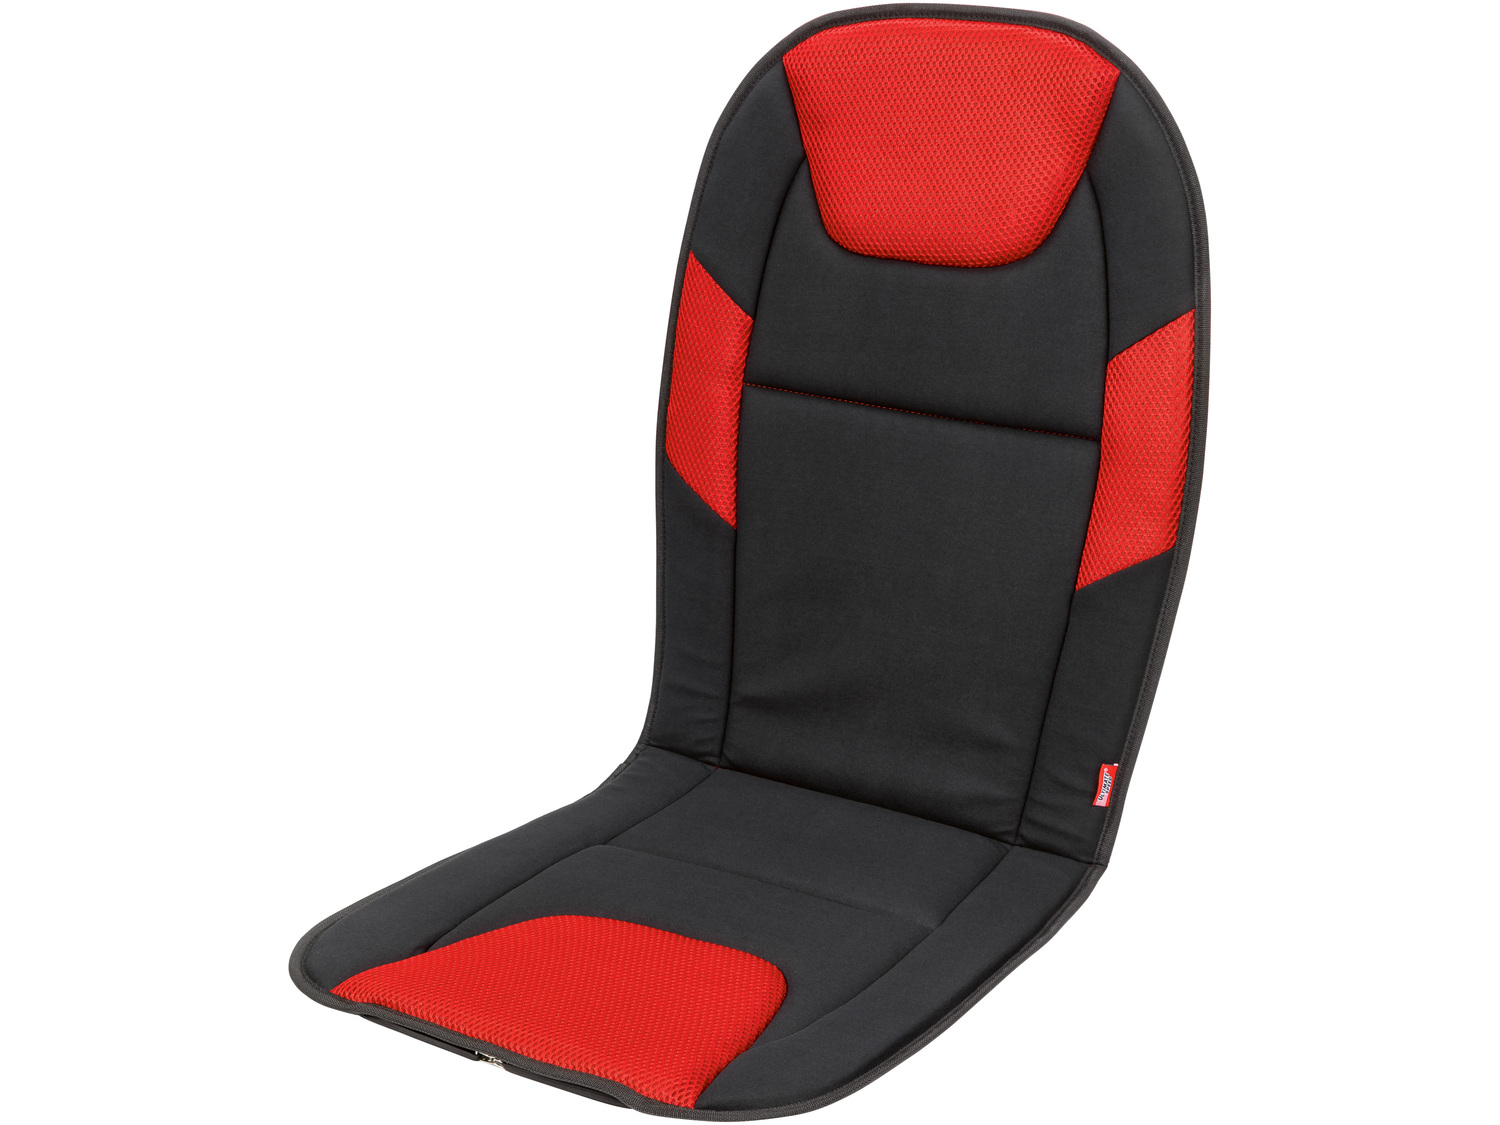 Nakładka na fotel samochodowy Ultimate Speed, cena 5,00 PLN 
różne wzory
Opis

- ...